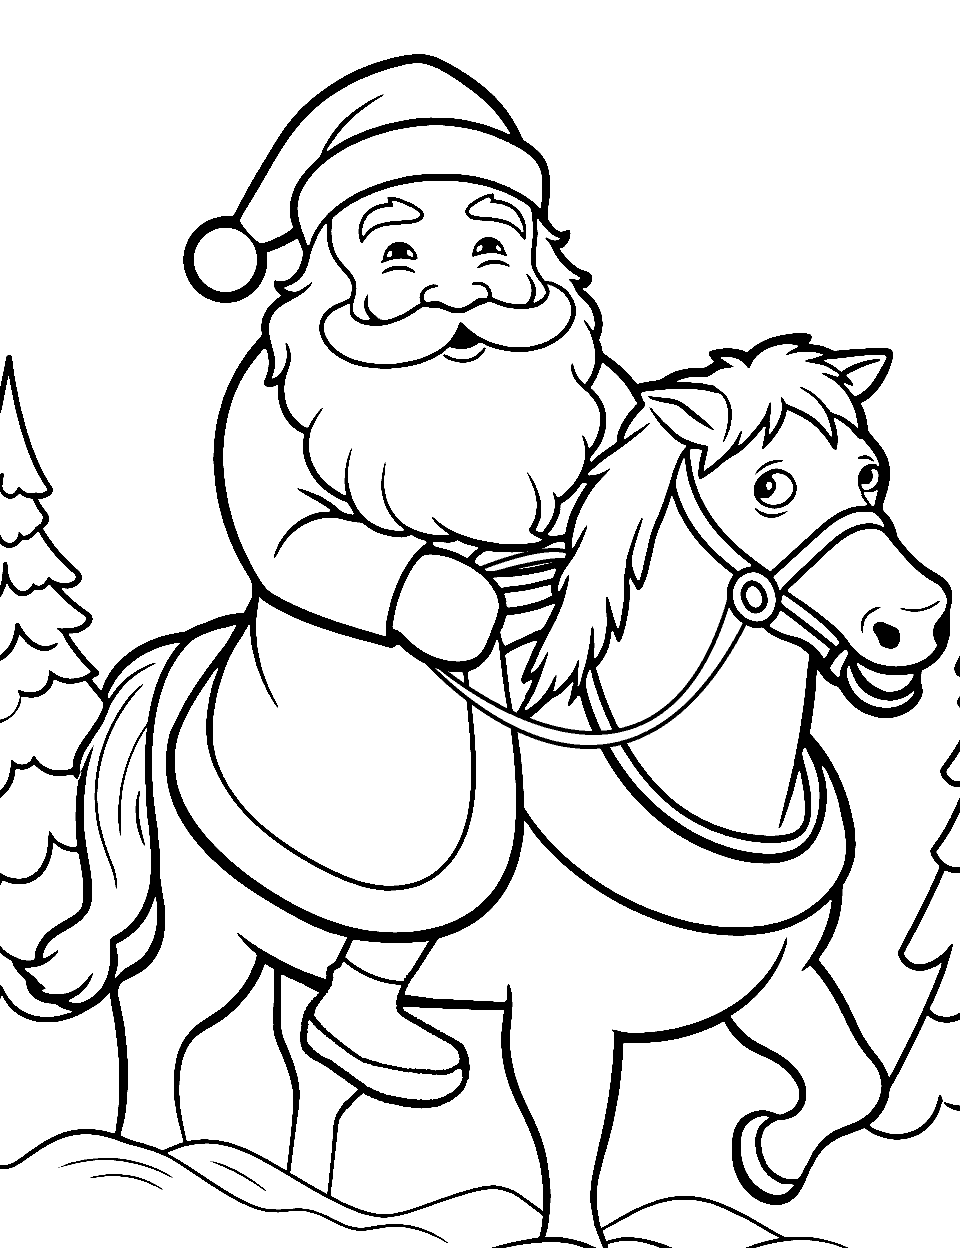 Santa Riding a Horse Coloring Page - Santa riding a horse through a snowy landscape.